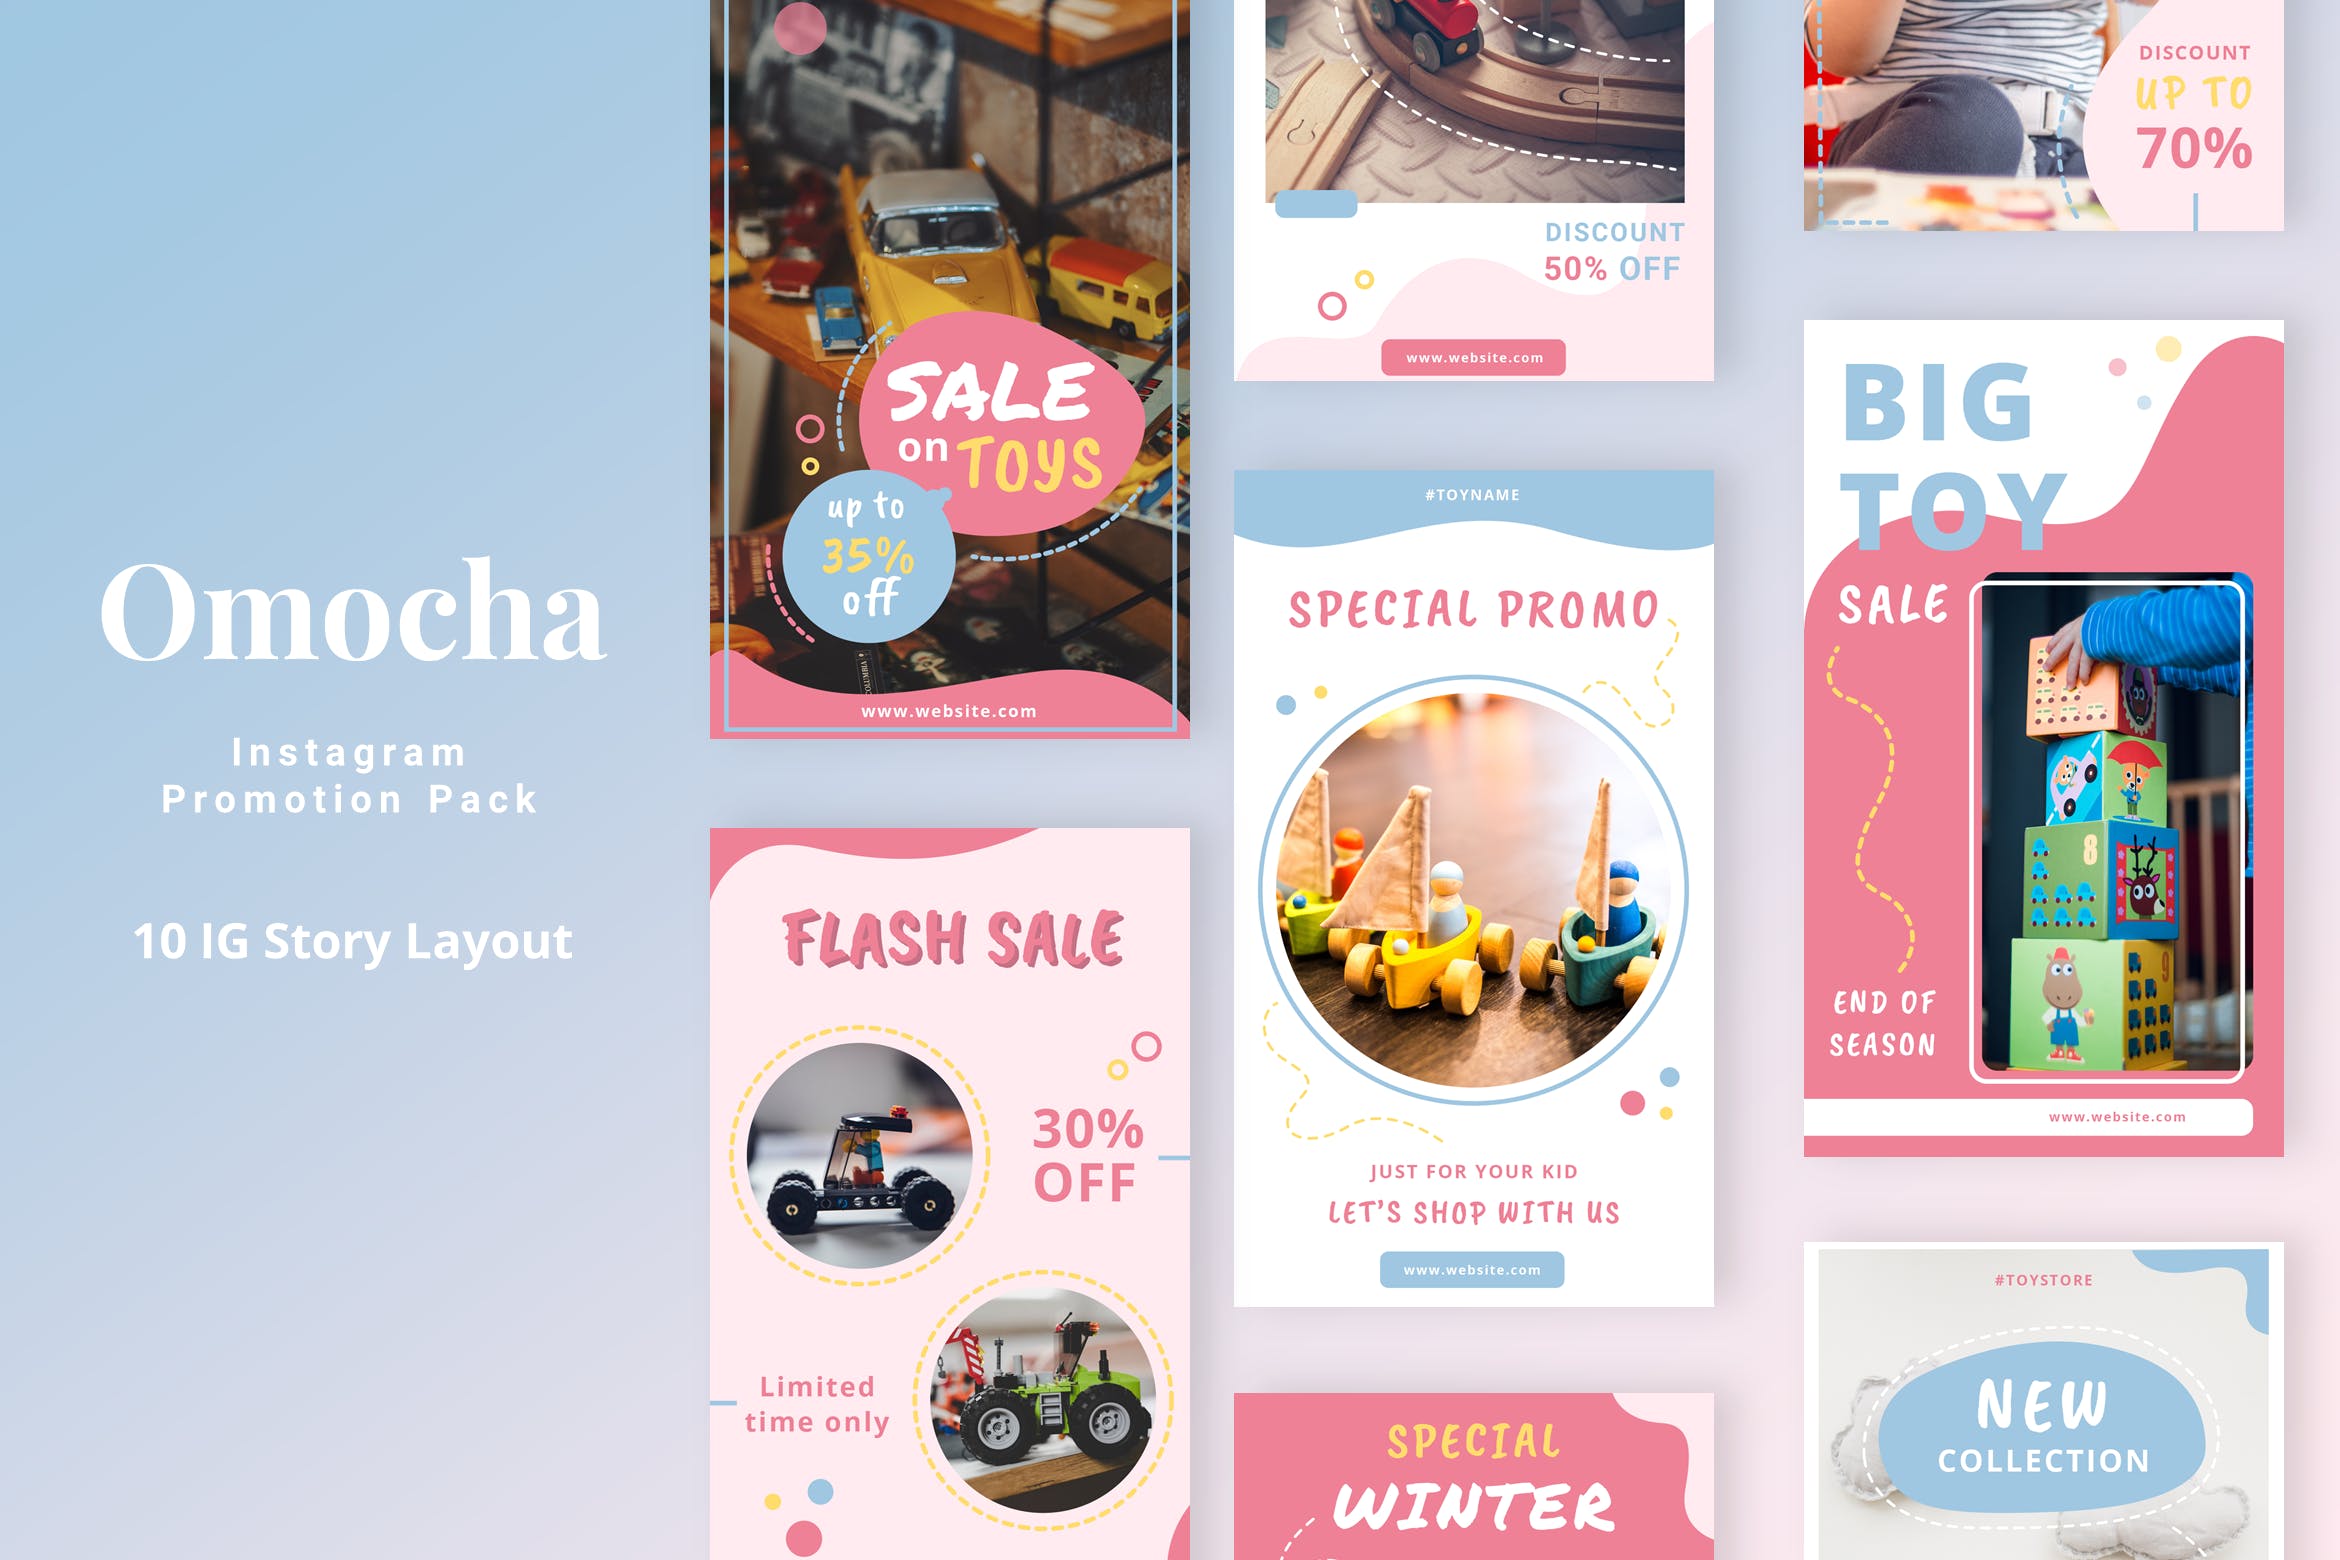 儿童玩具品牌Instagram广告设计模板第一素材精选 Omocha – Instagram Story Pack插图